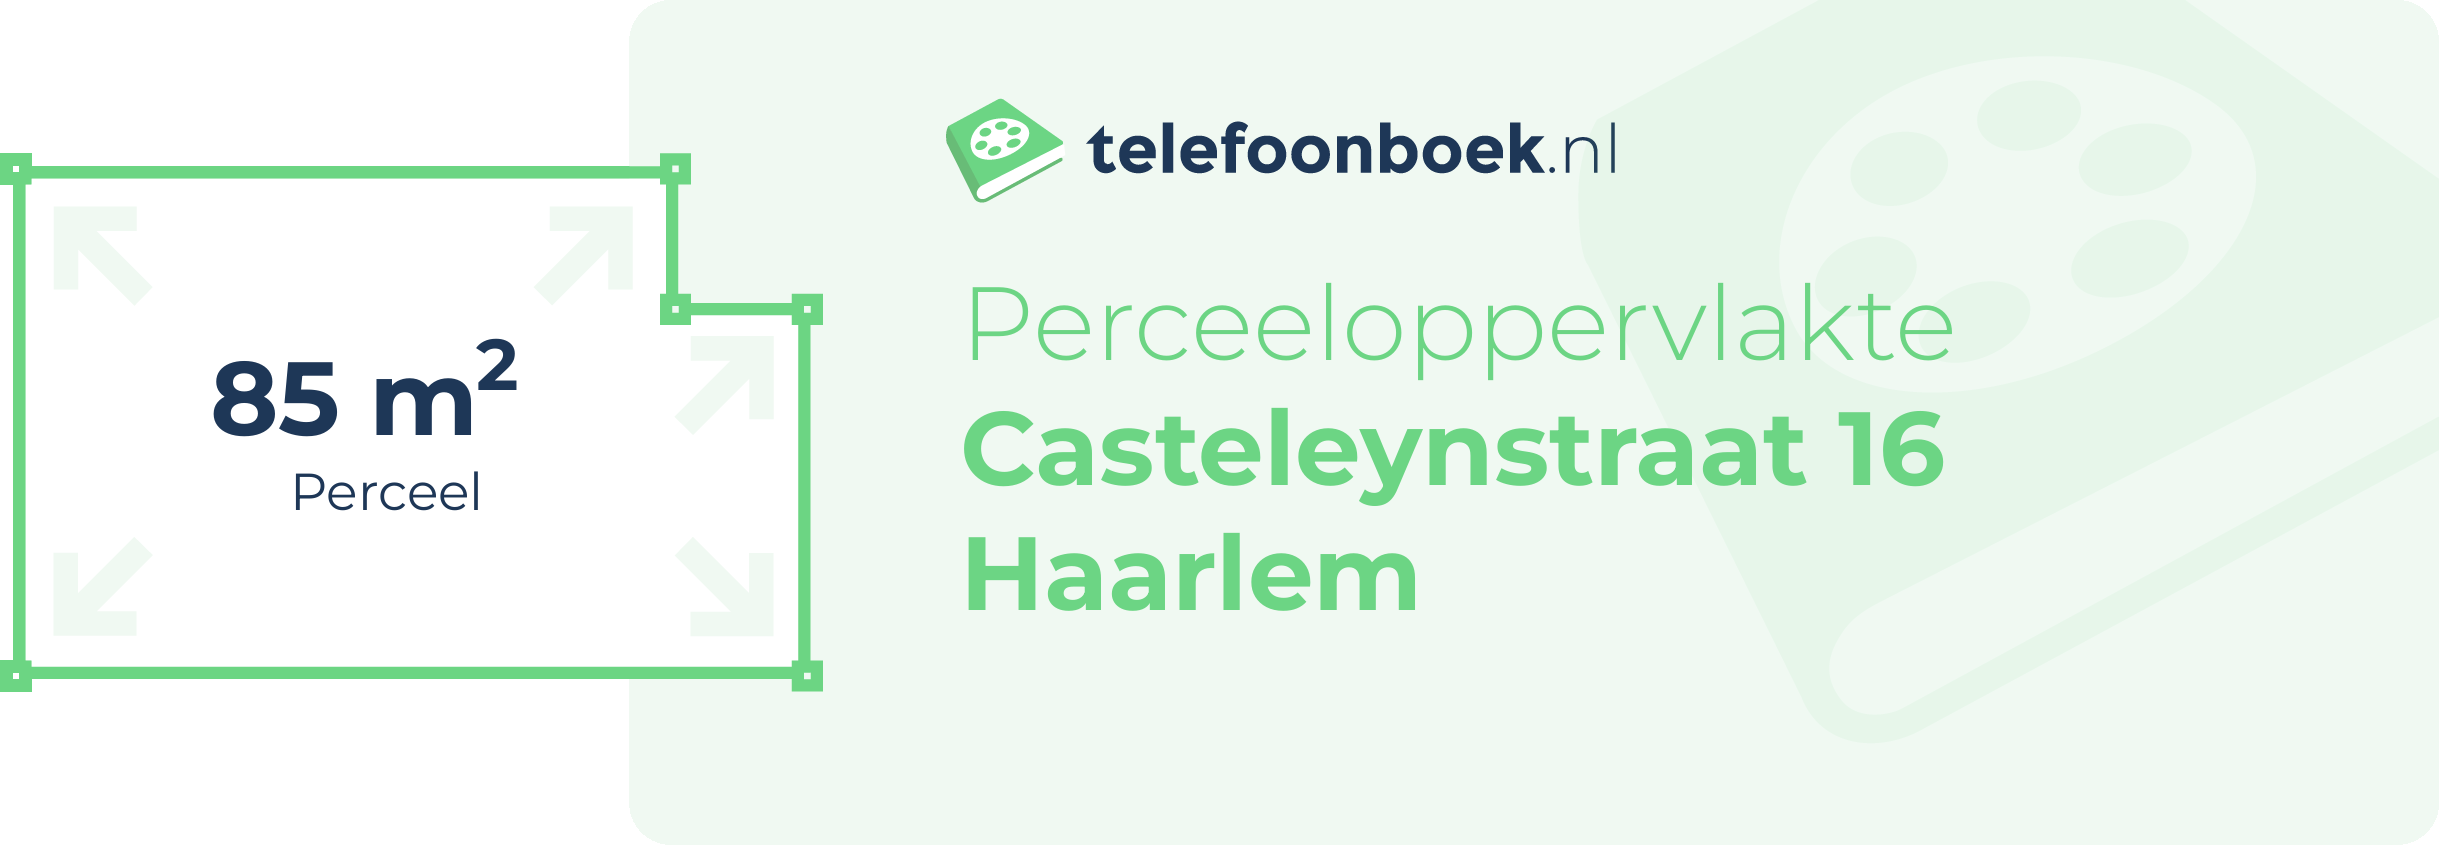 Perceeloppervlakte Casteleynstraat 16 Haarlem